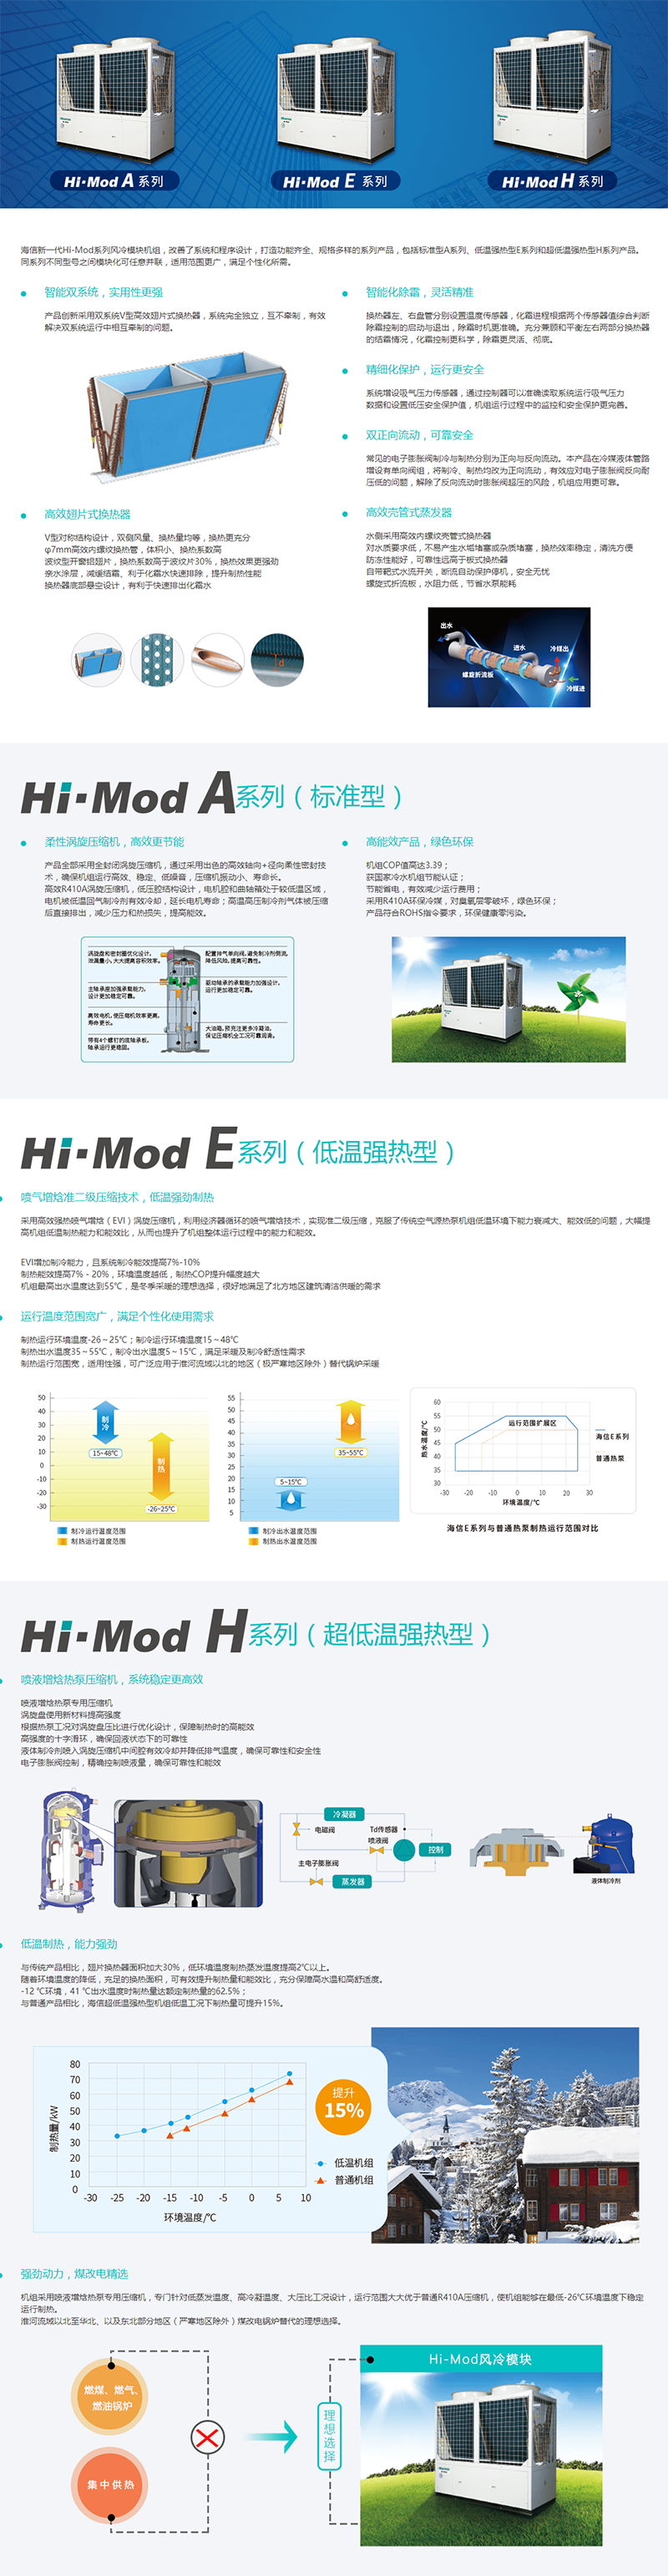 商用中央空调 Hi-Mod风冷模块（2系列）